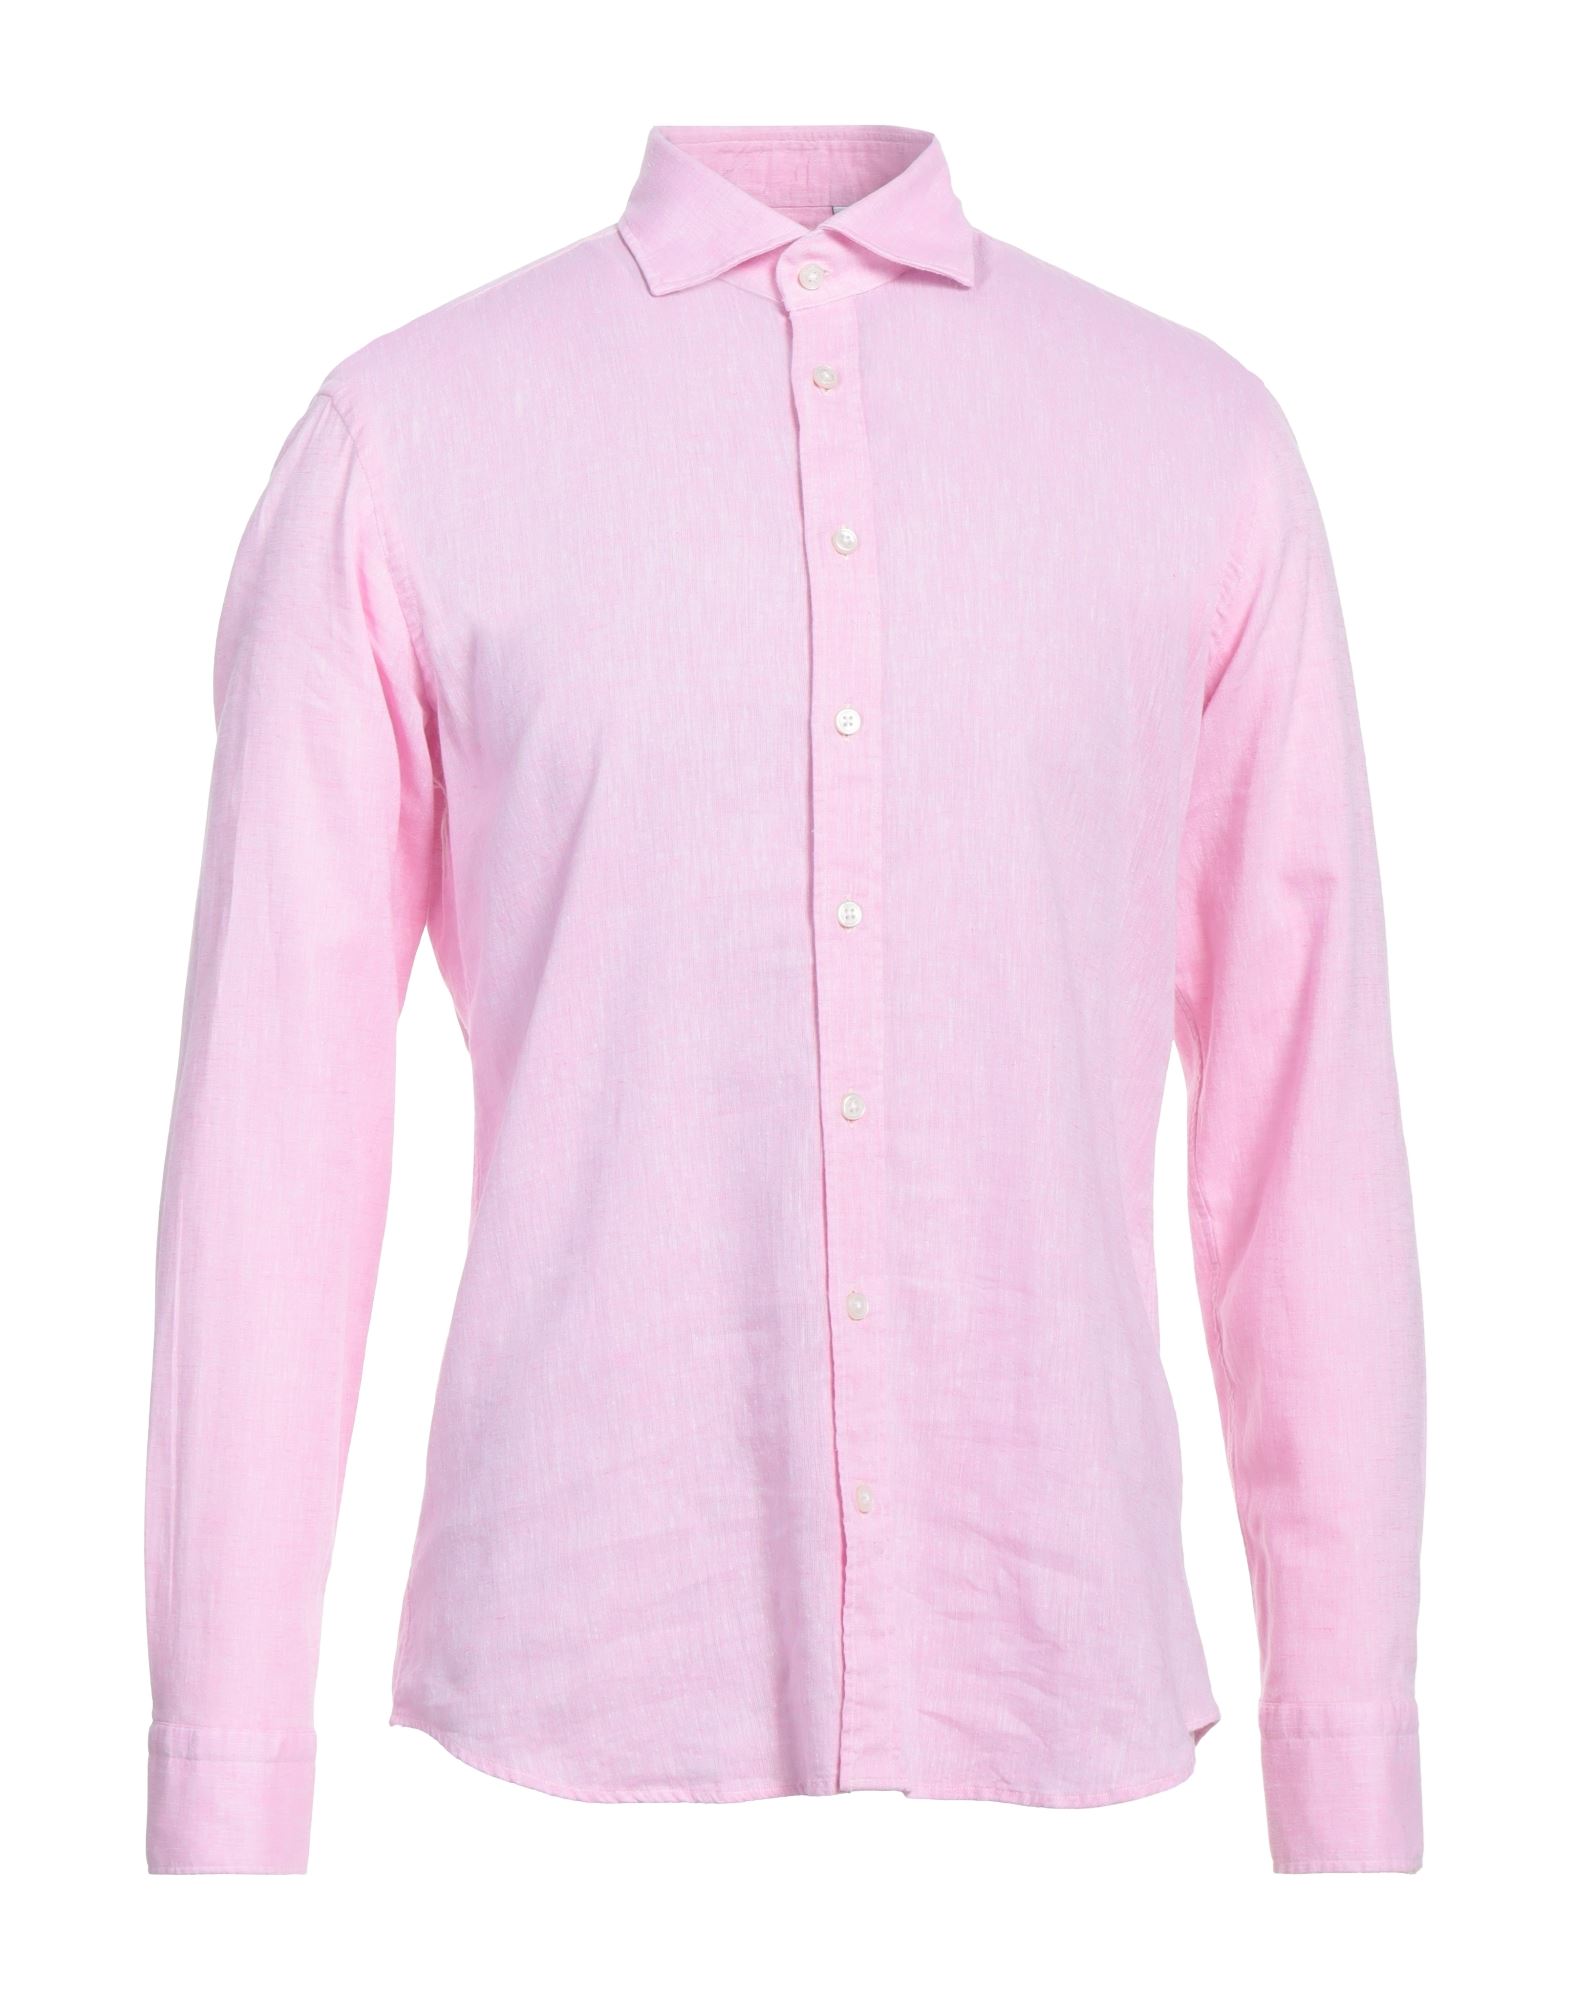 Bastoncino Shirts In Pink